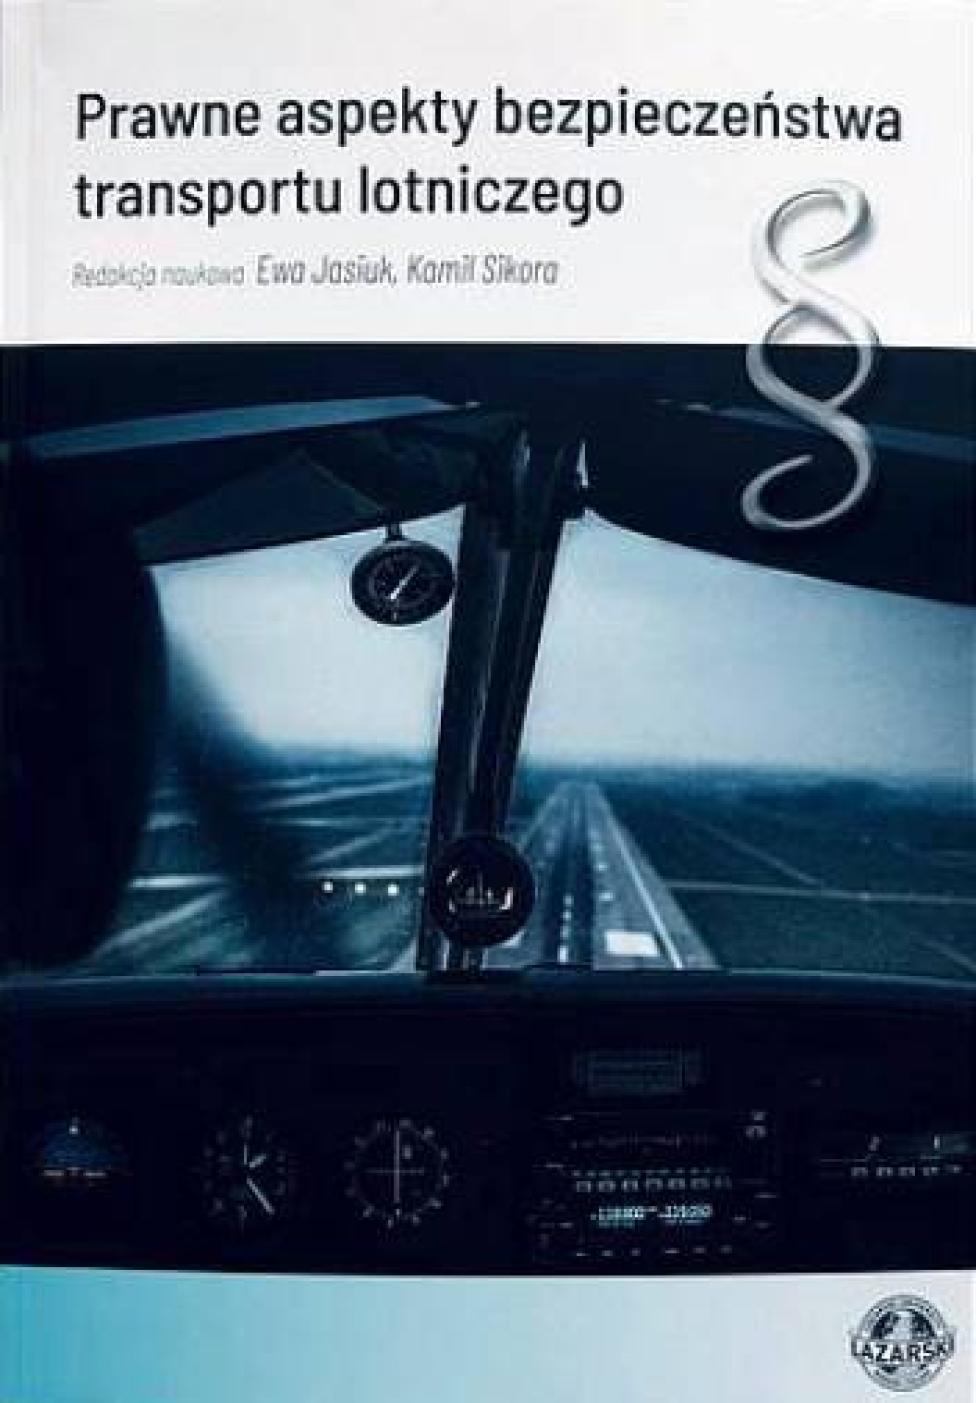 Monografia "Prawne aspekty bezpieczeństwa transportu lotniczego" (fot. lazarski.pl)